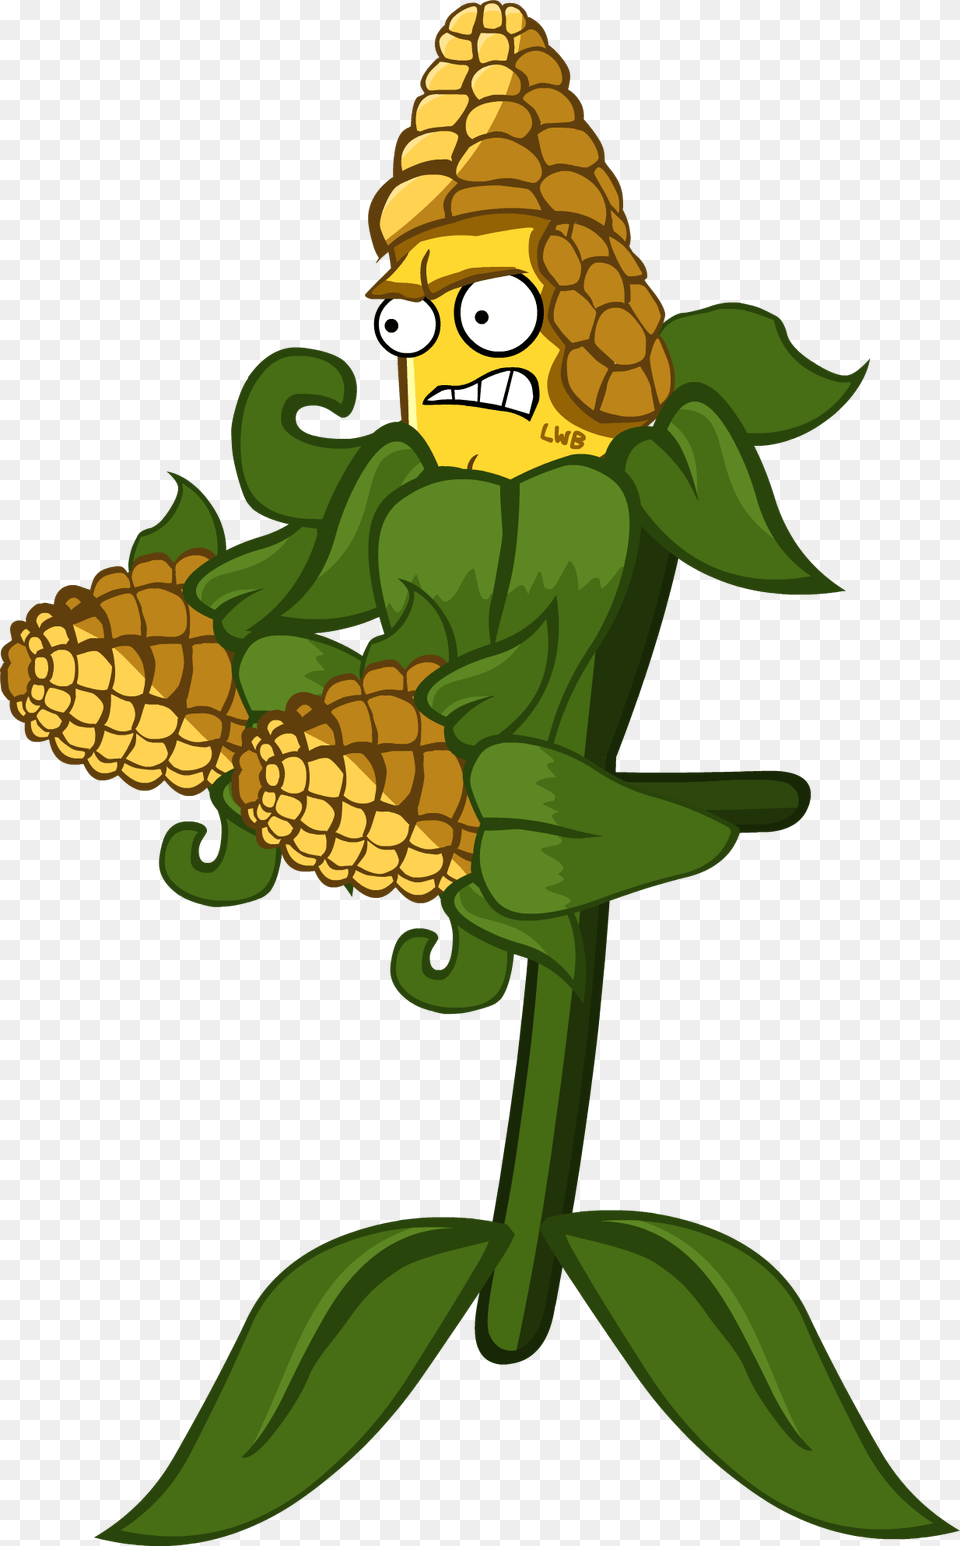 Crops Clipart Corn Leaf Plants Vs Zombies 2 Corn, Food, Grain, Plant, Produce Free Transparent Png